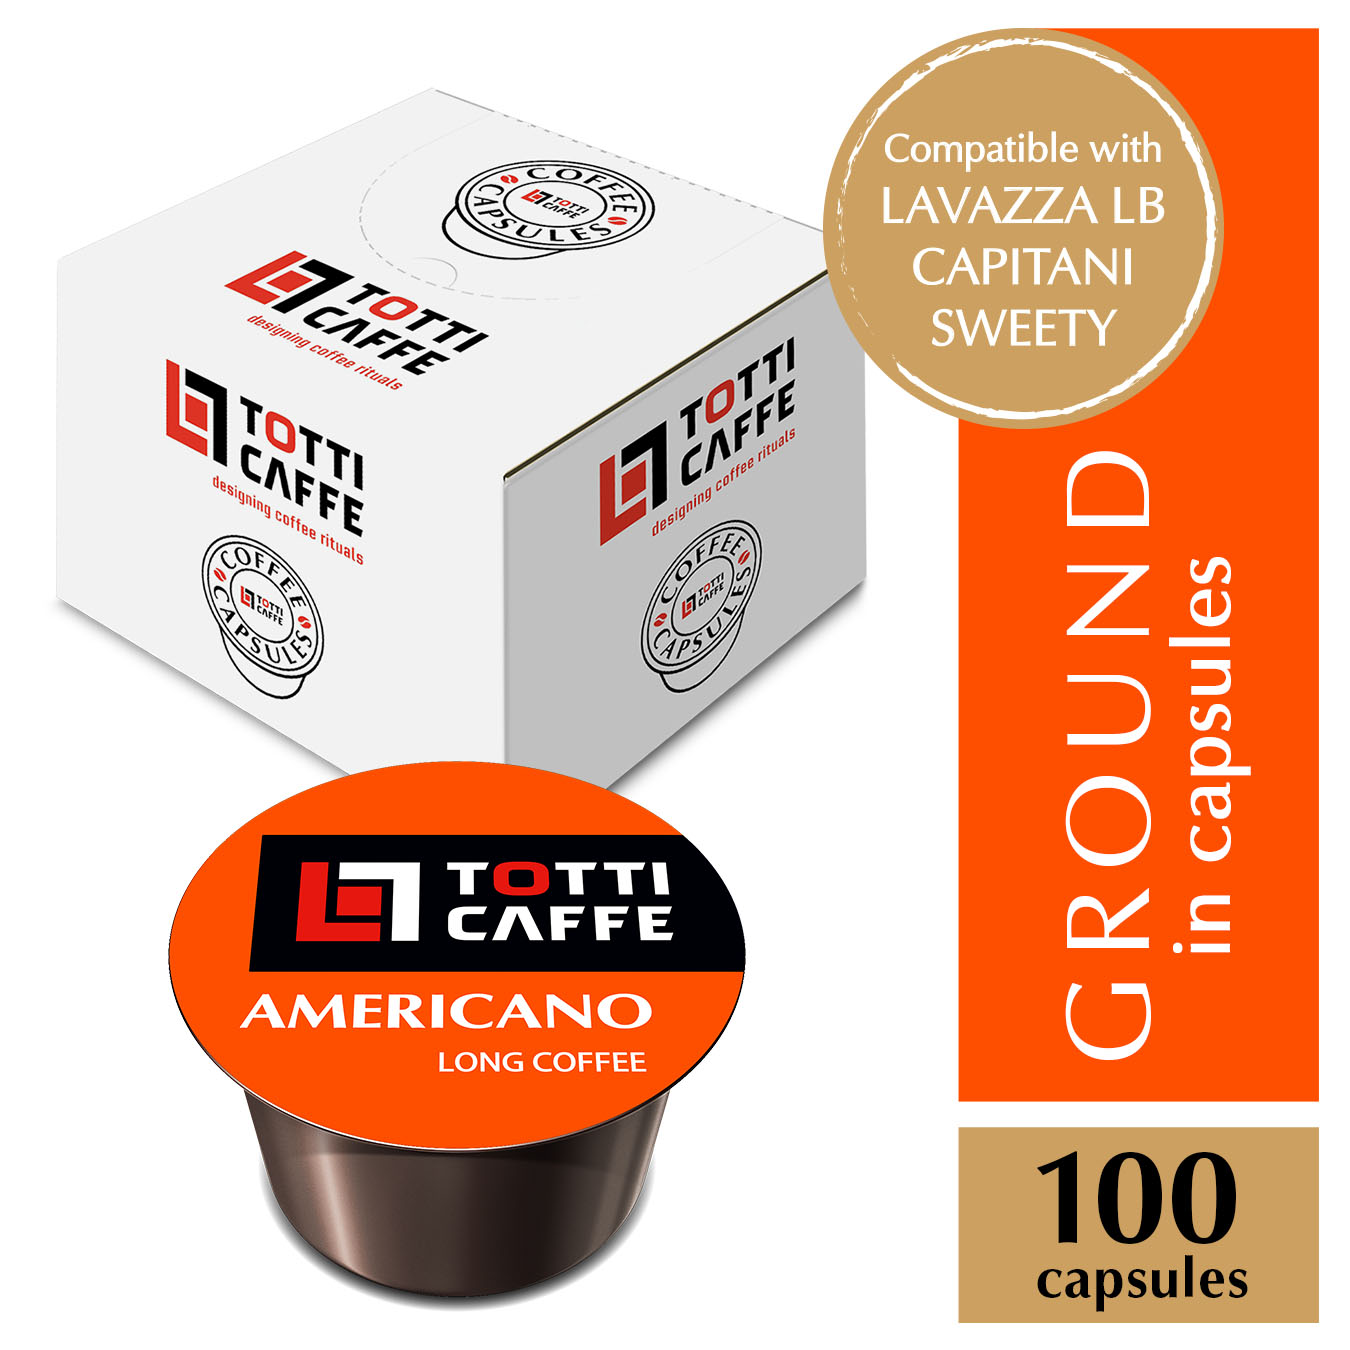 Capsules TOTTI CAFFE Americano